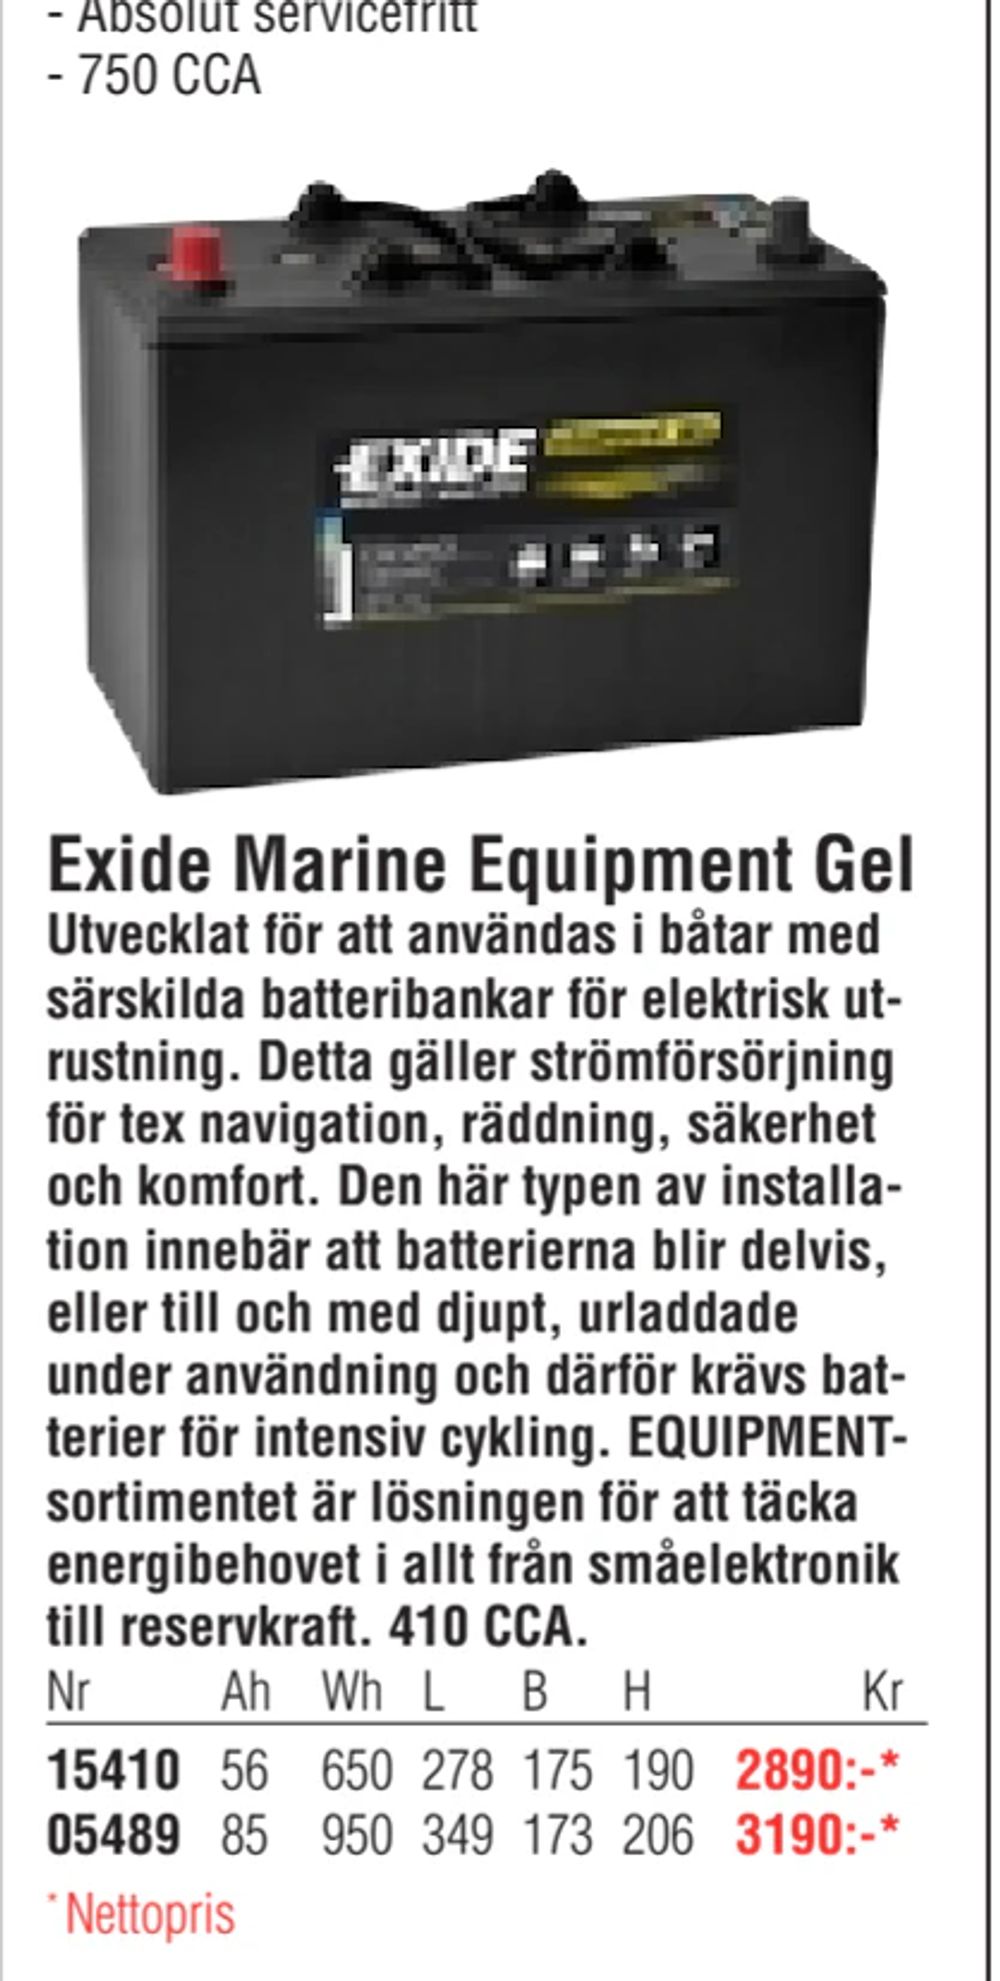 Erbjudanden på Exide Marine Equipment Gel från Erlandsons Brygga för 2 890 kr